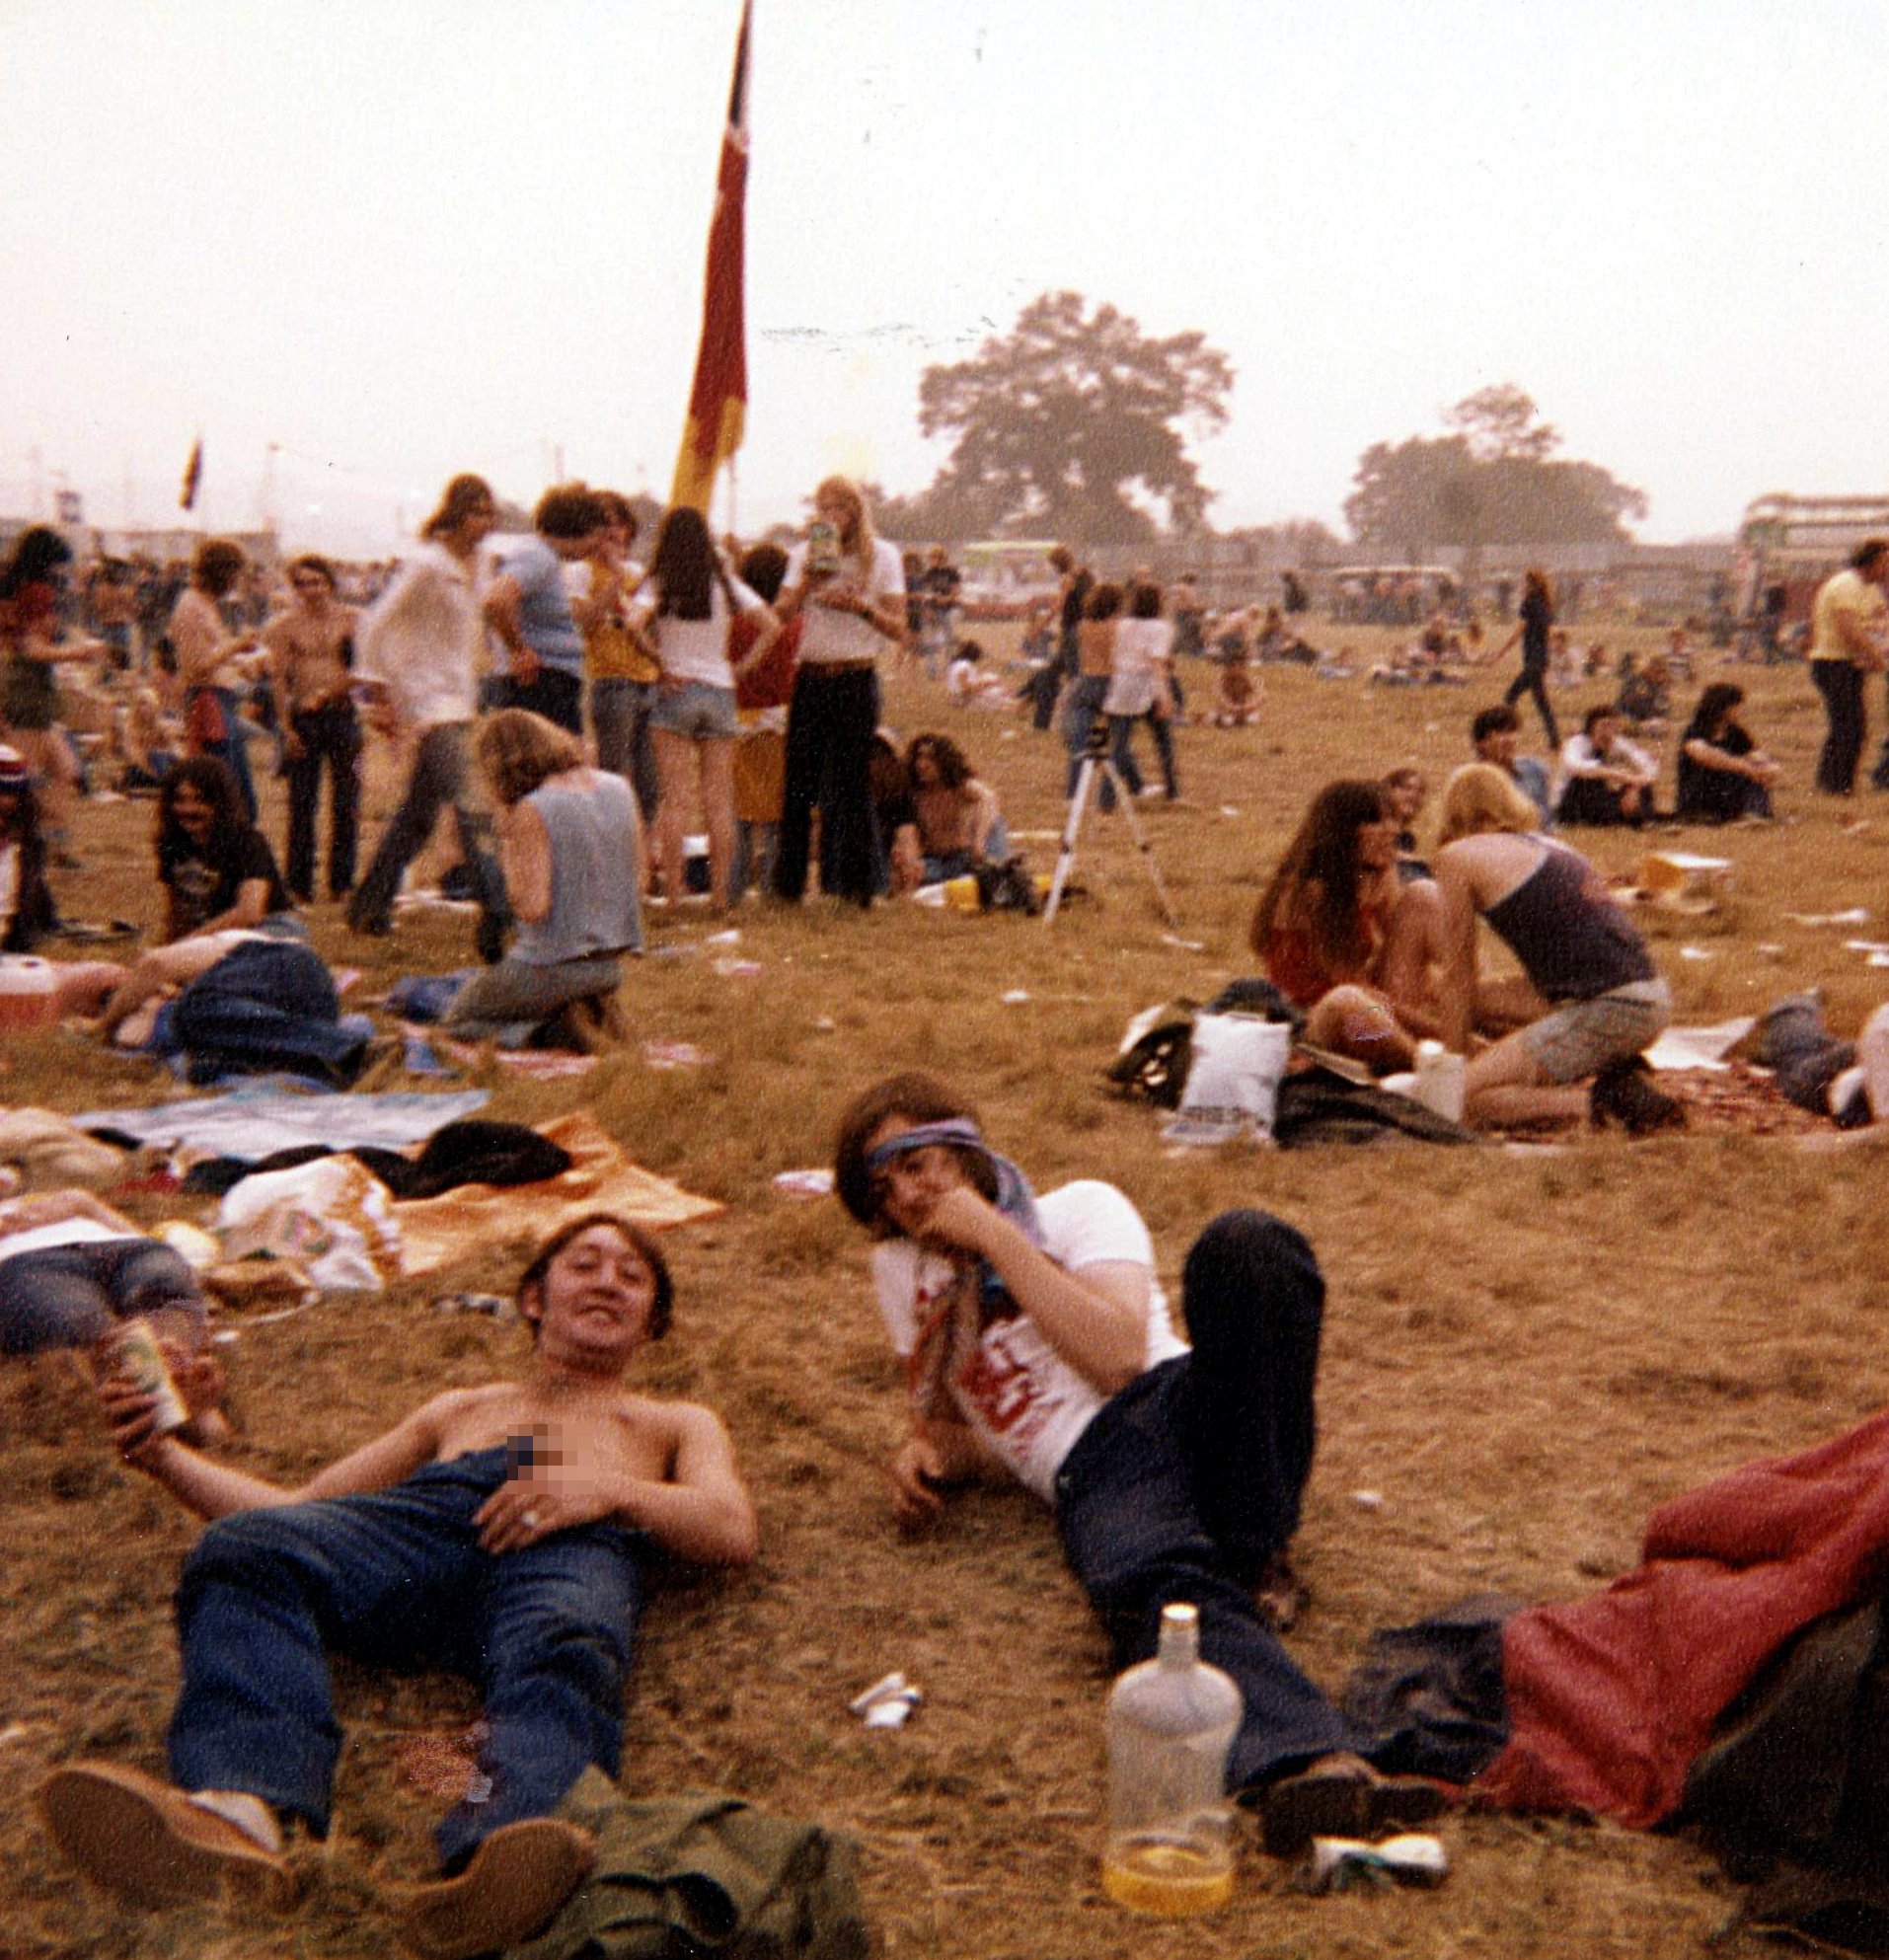 Reading Festival 1981